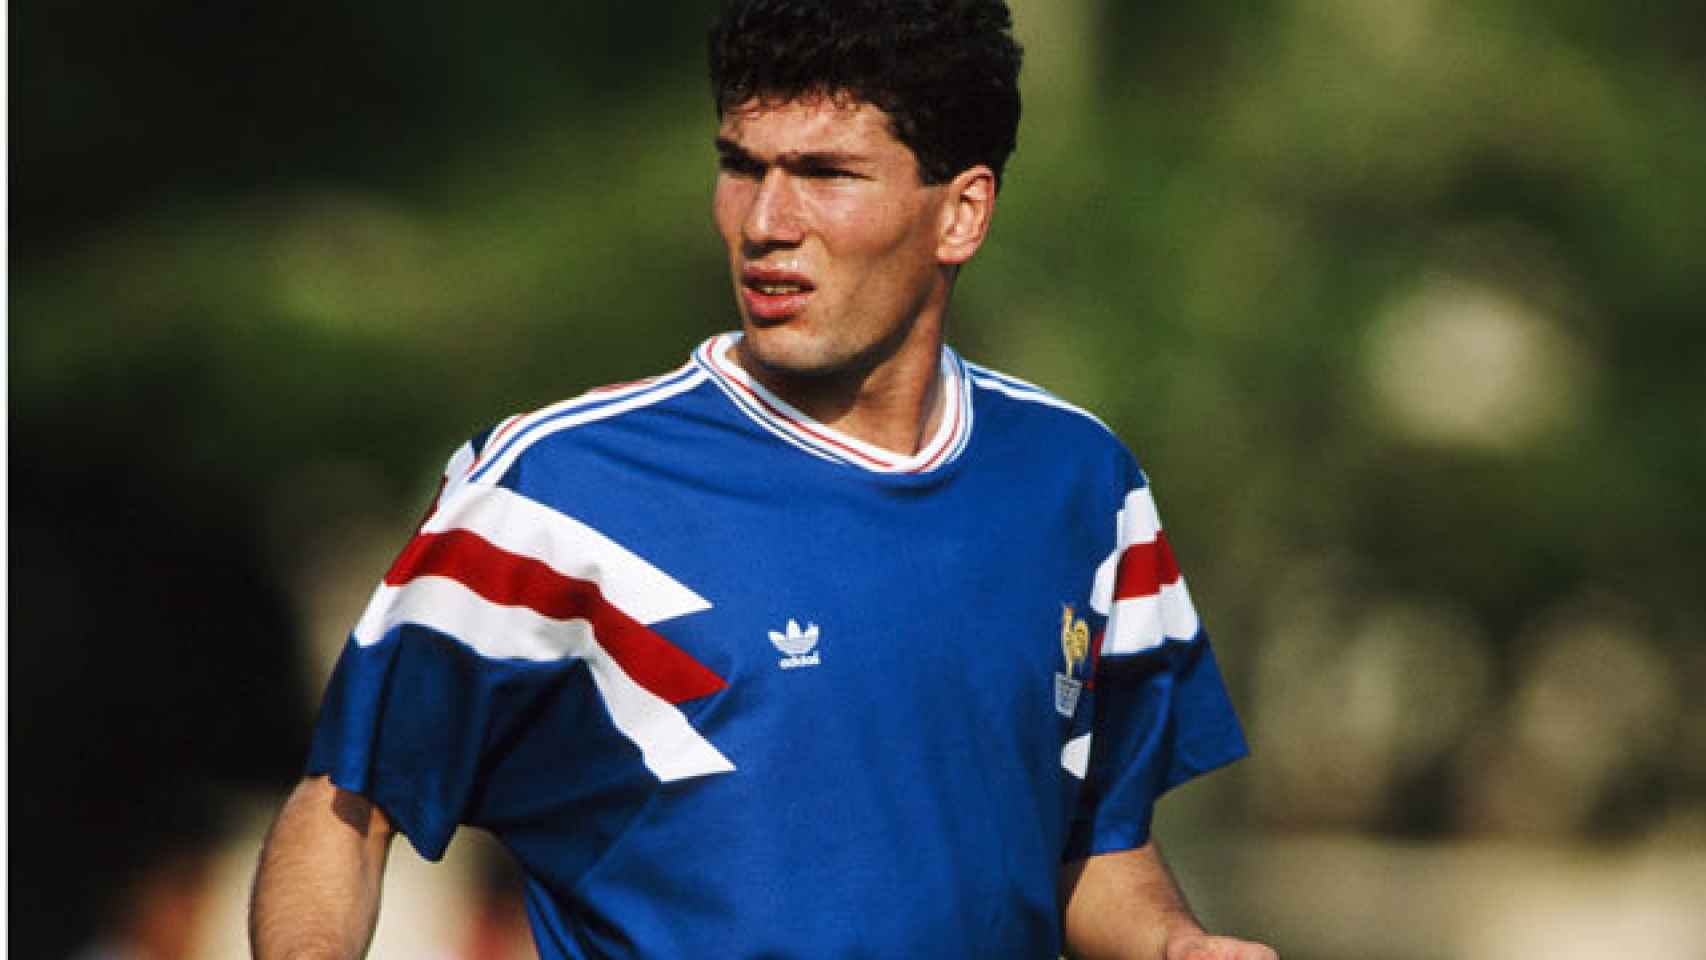 Un jovencísimo Zidane en sus inicios en el fútbol.